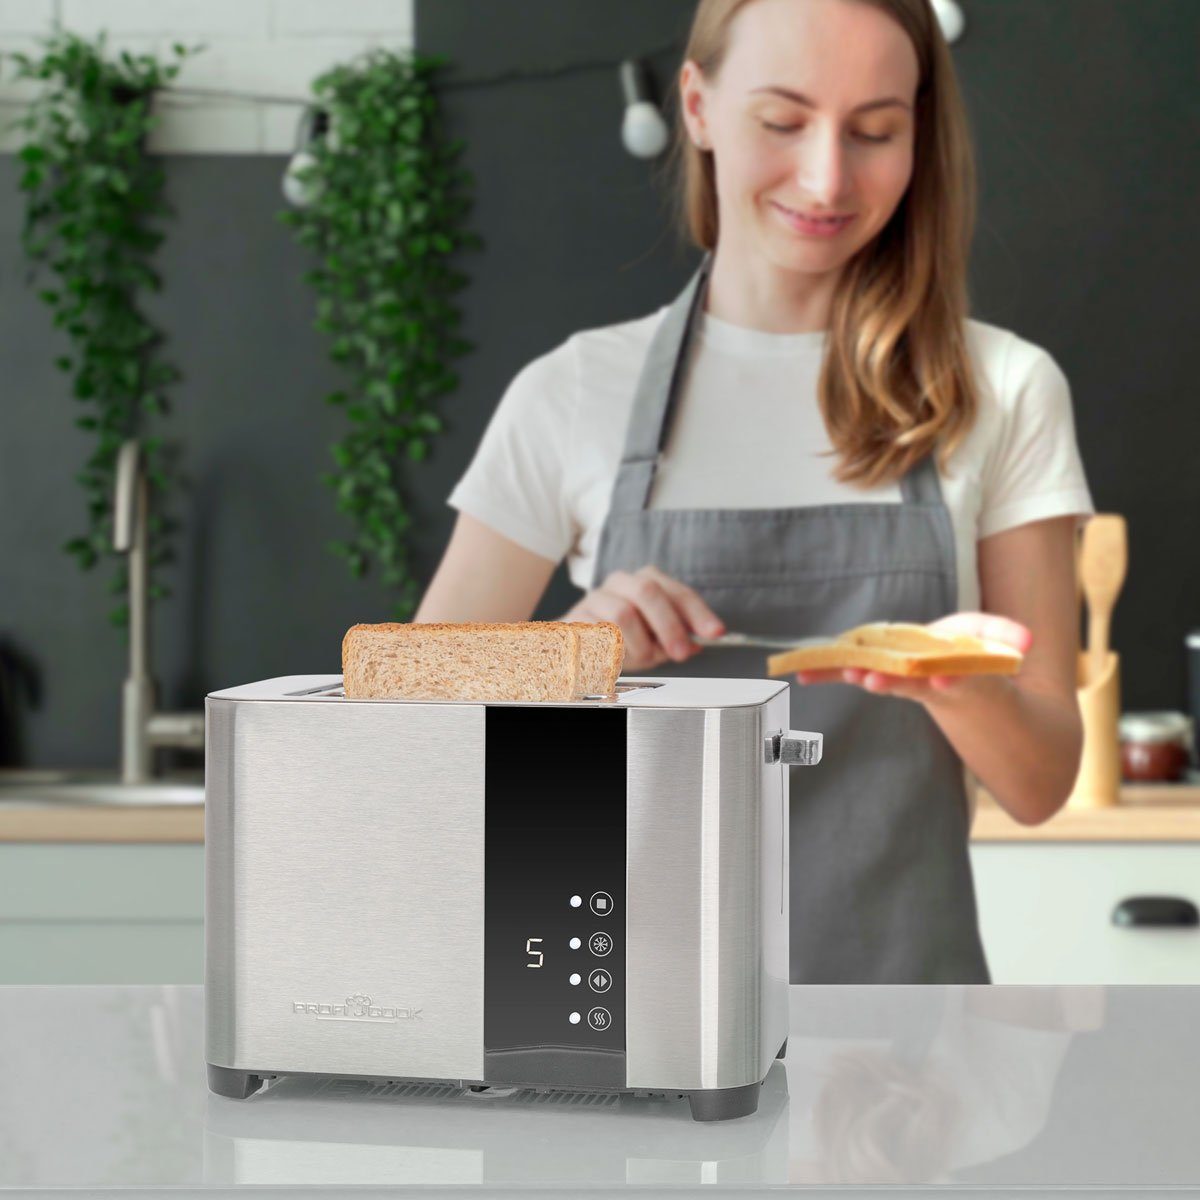 ProfiCook Toaster PC-TA 1250, Toaster Touch-Bedienung, Scheiben, Senor mit Edelstahl 2